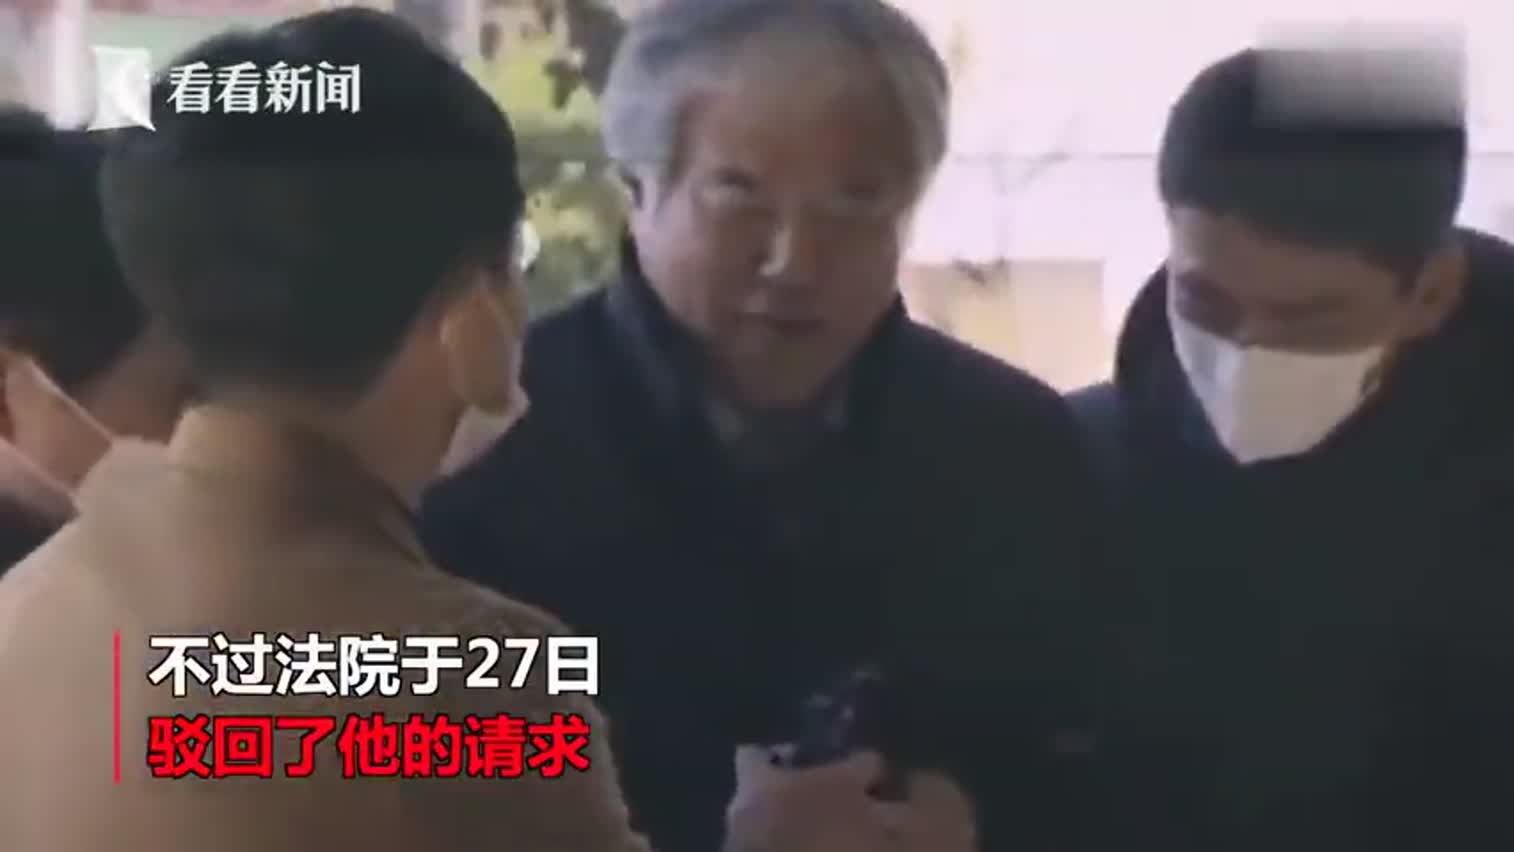 视频-高呼“哈利路亚”的韩国牧师全光勋要求解除拘